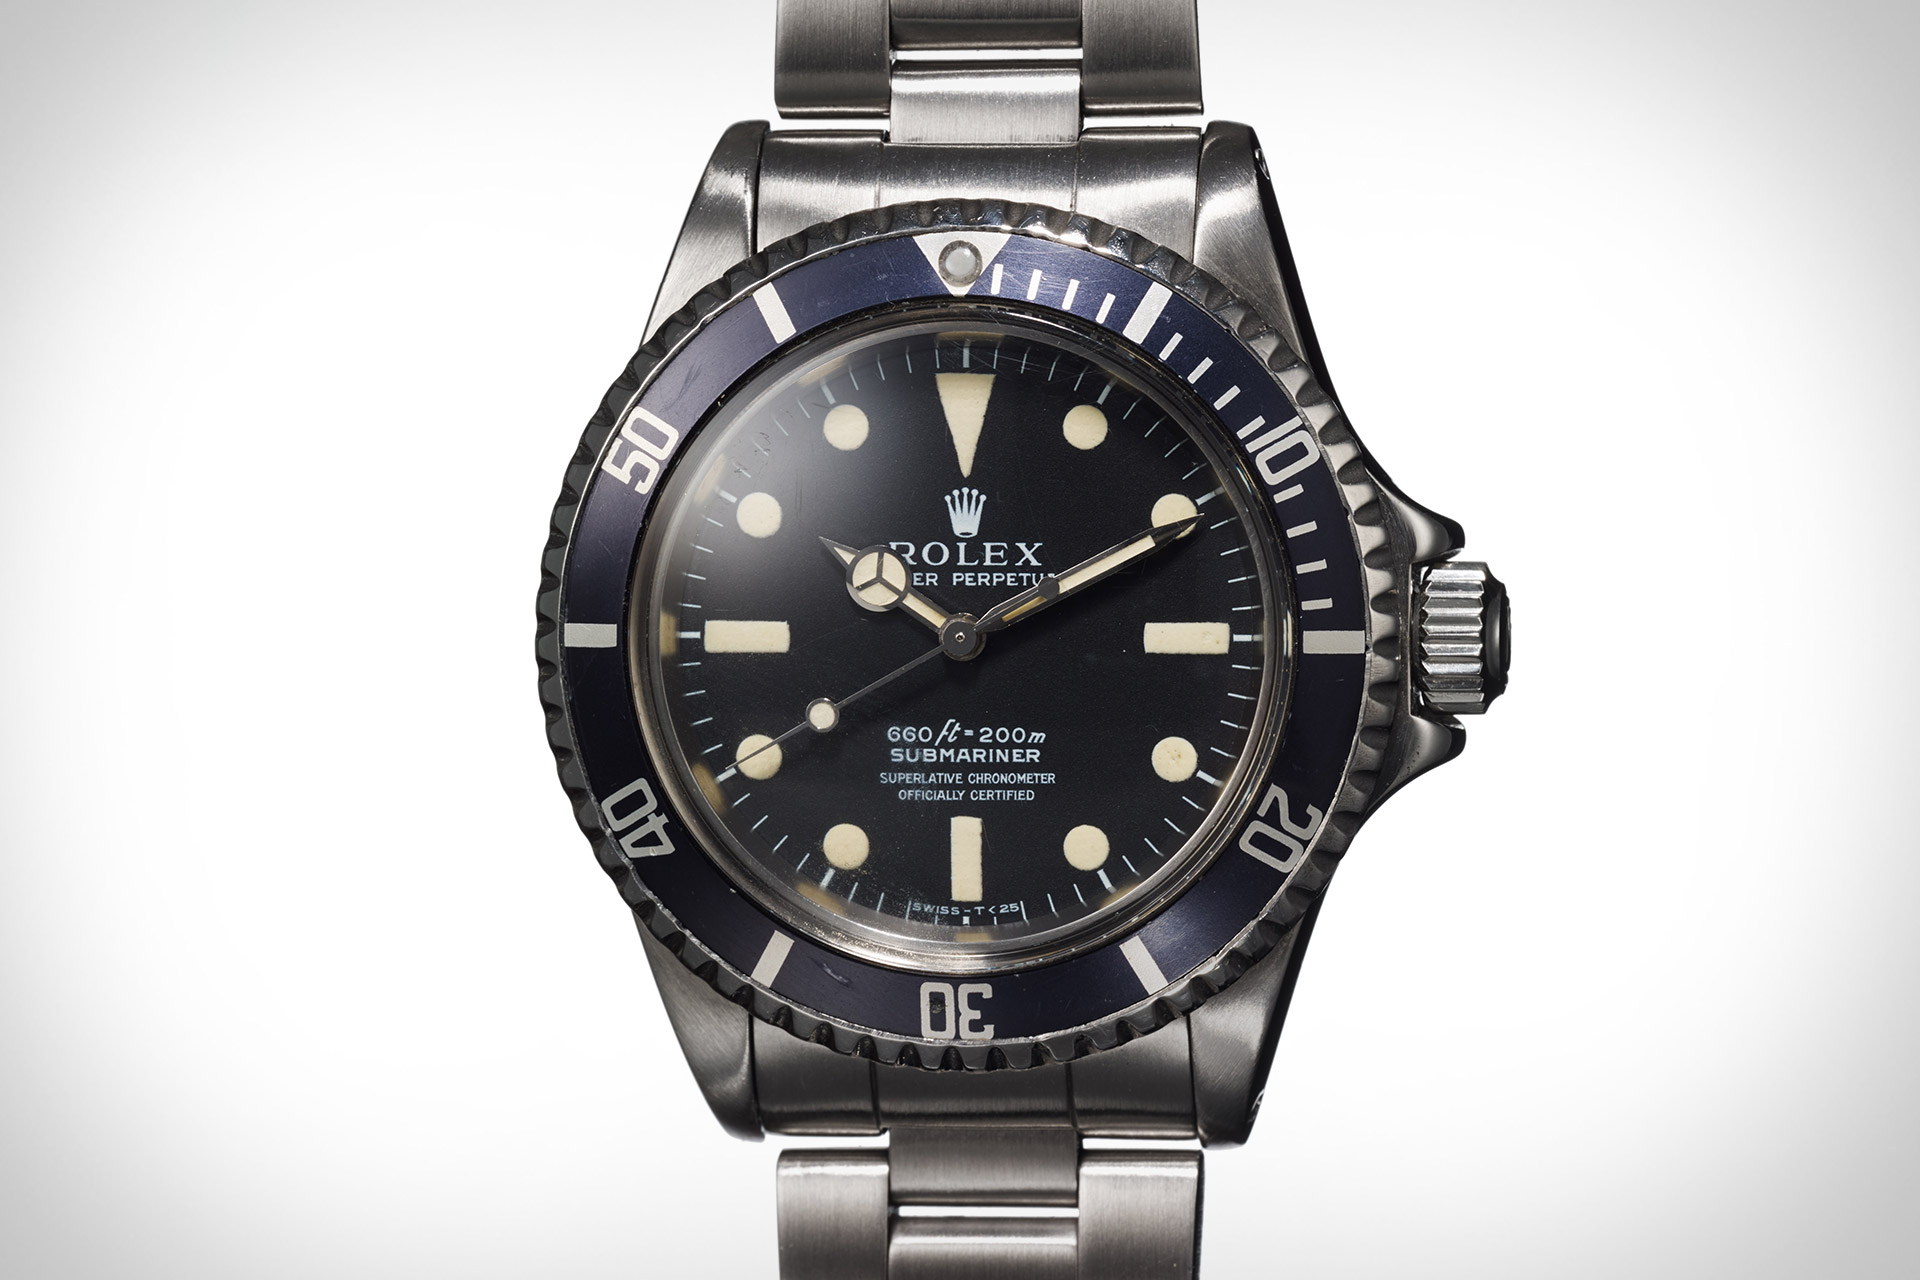 Steve McQueen's Rolex Submariner Watch | Uncrate